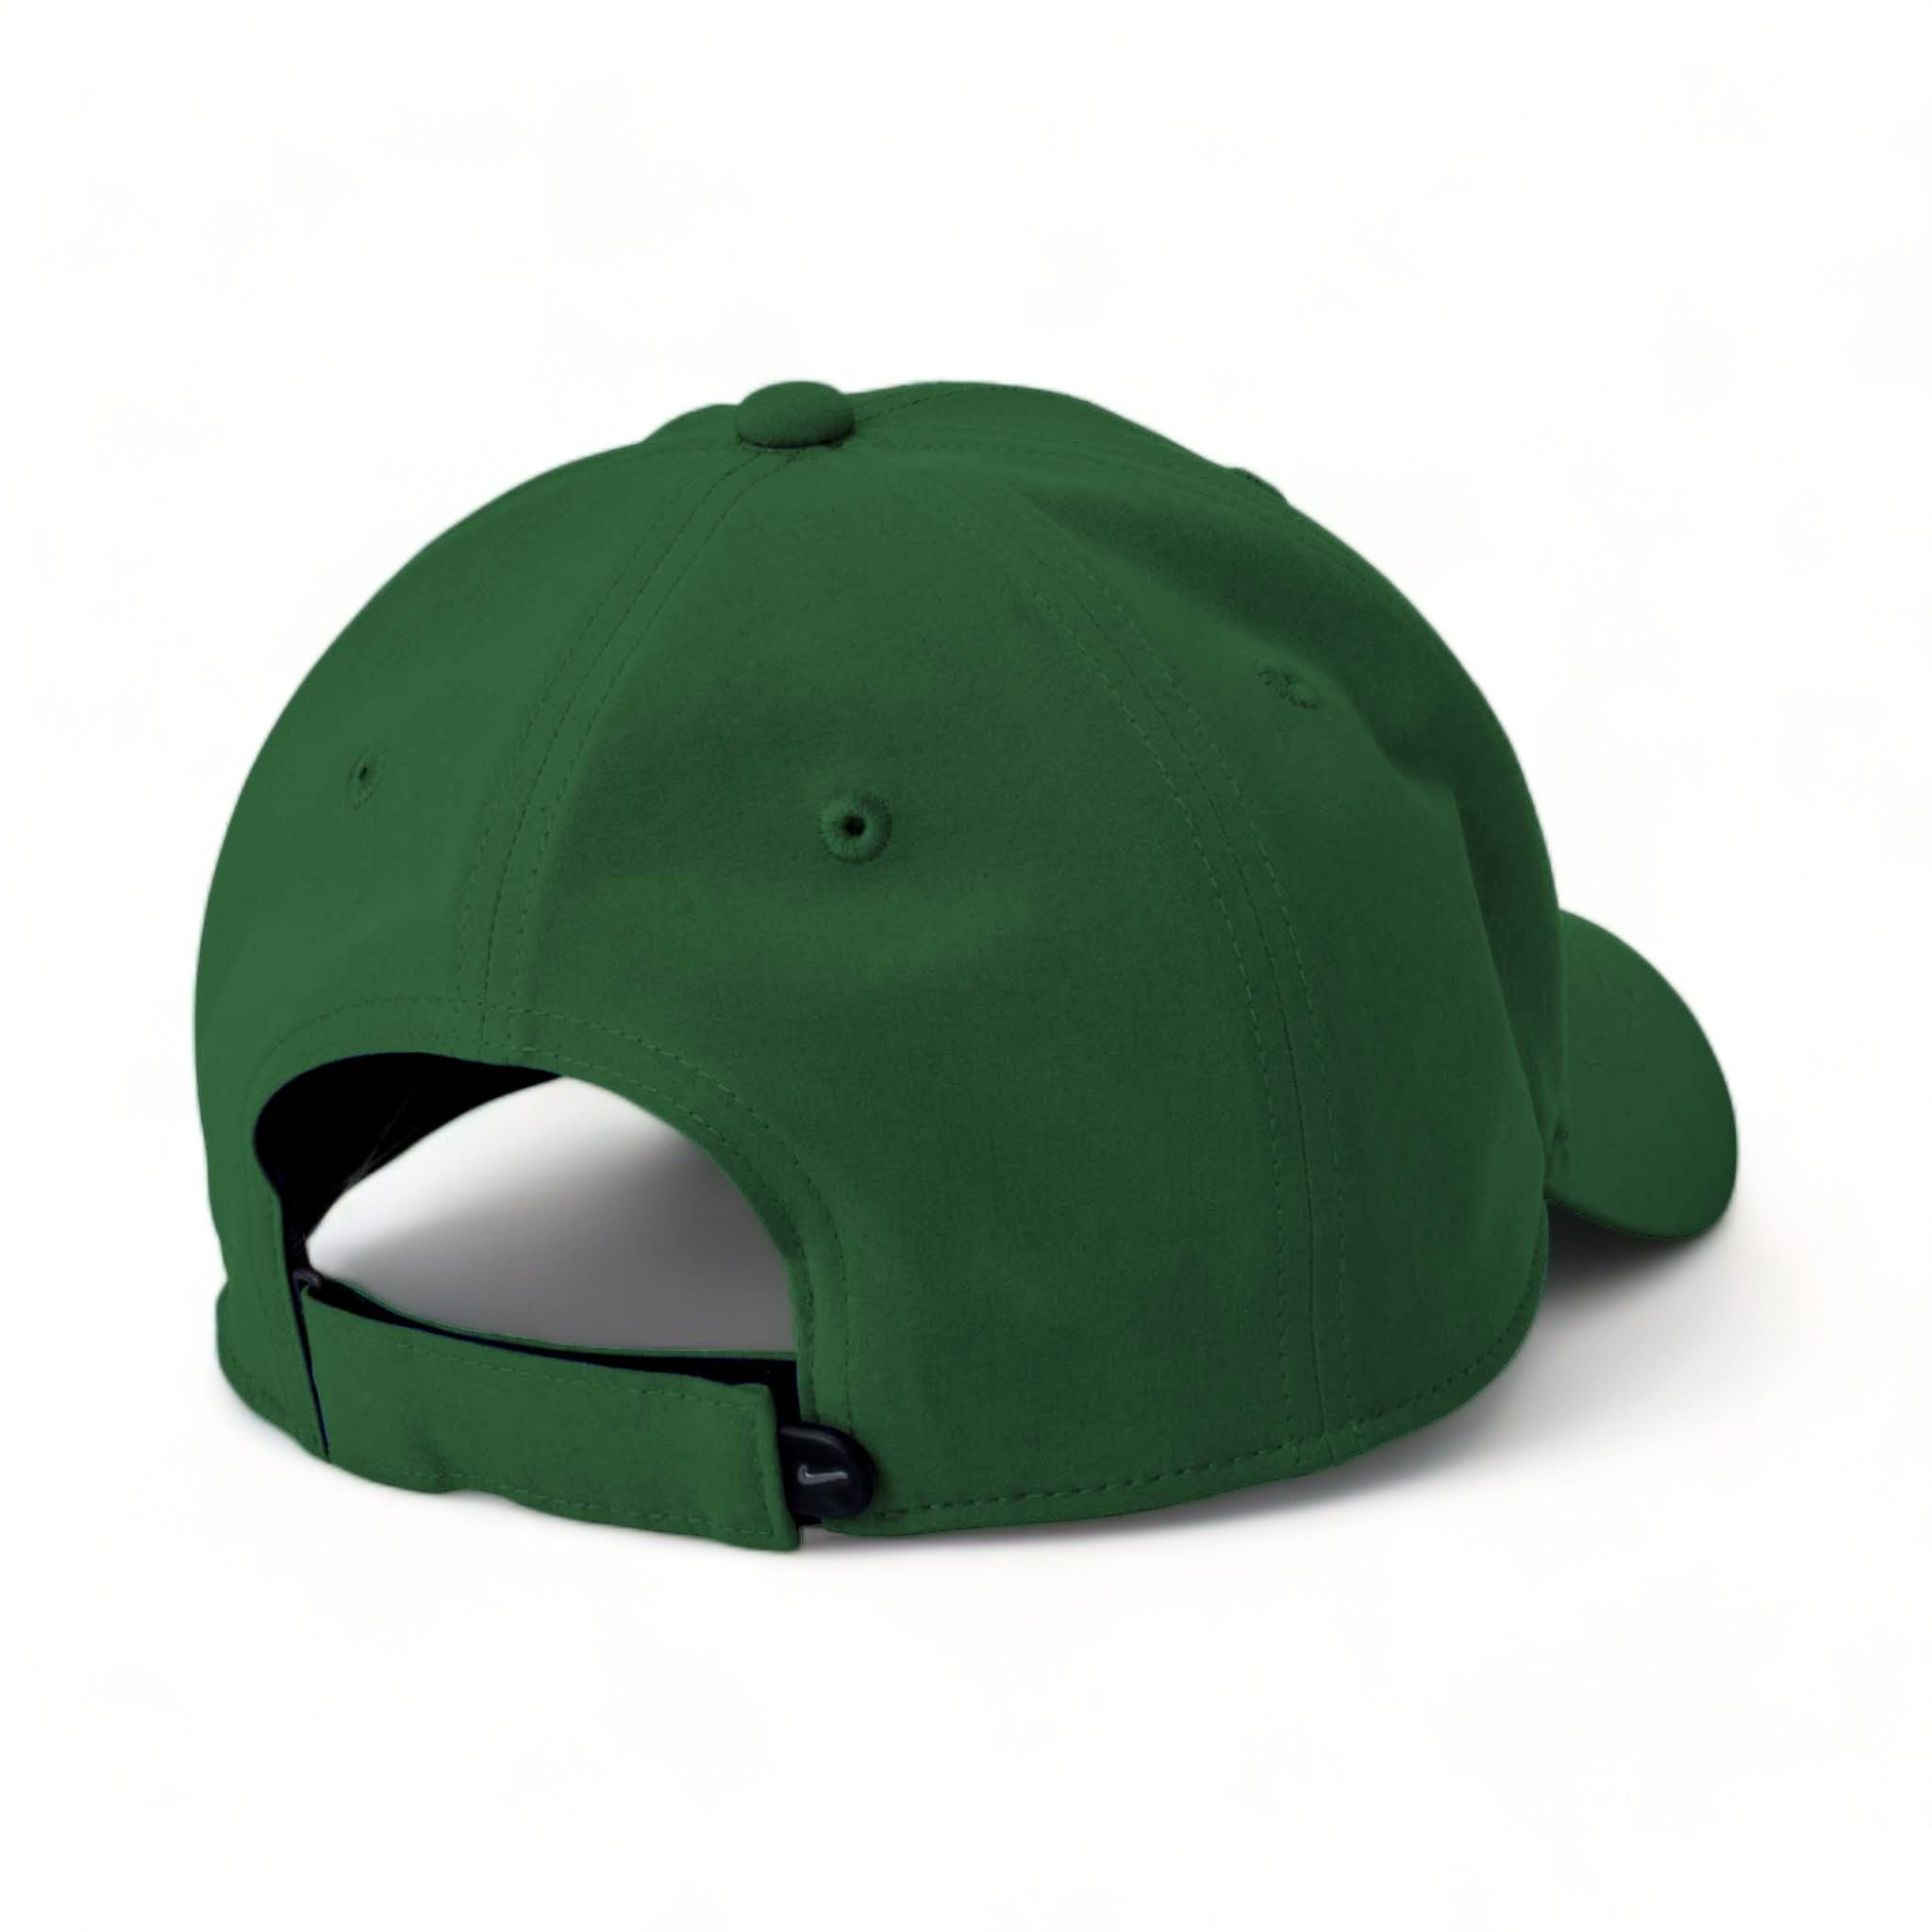 Back view of Nike NKFB6447 custom hat in gorge green